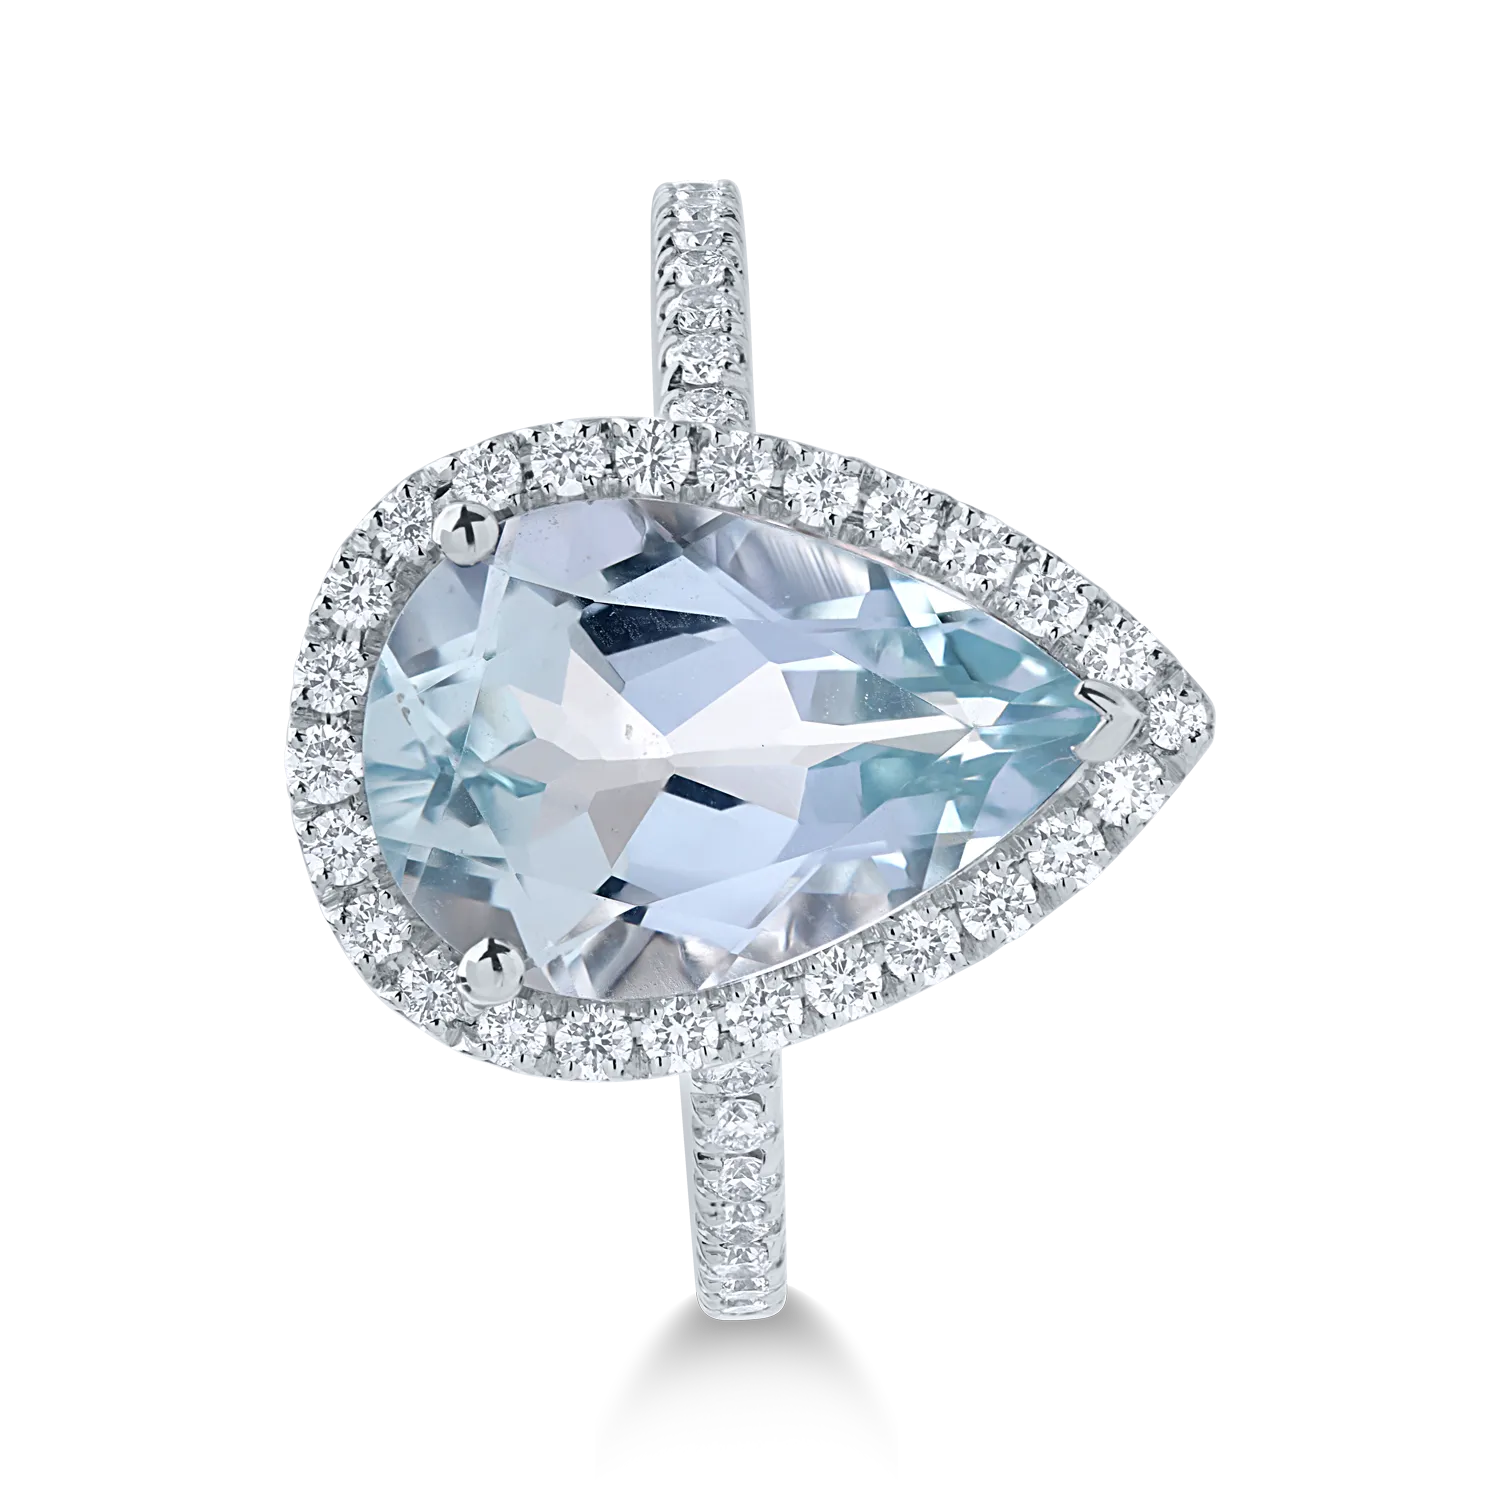 White gold ring with 3.4ct aquamarine and 0.4ct diamonds